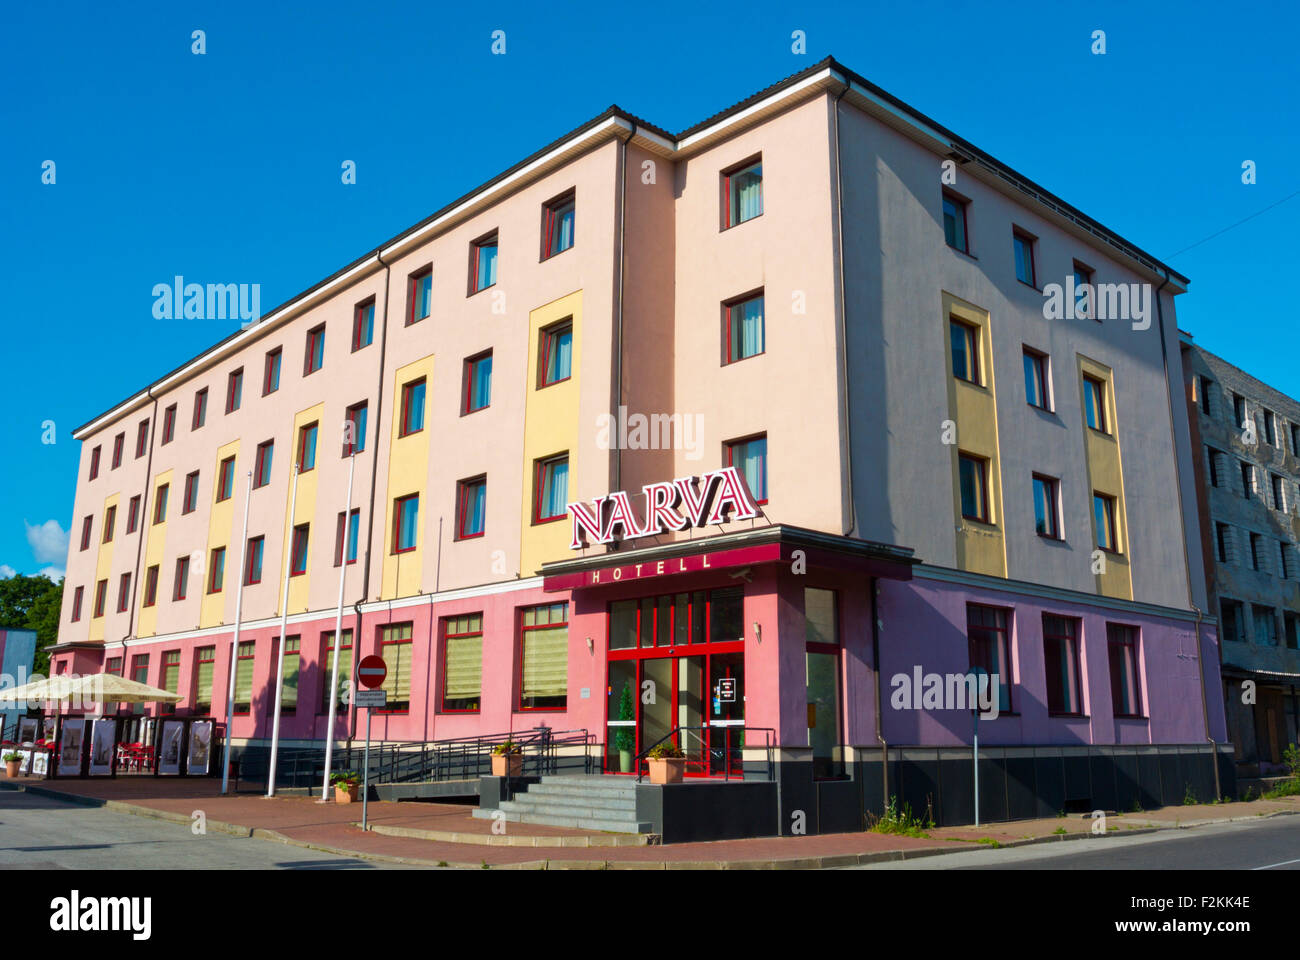 Le Narva hotell, Narva, comté d'Ida-Viru, est de l'Estonie, Europe Banque D'Images